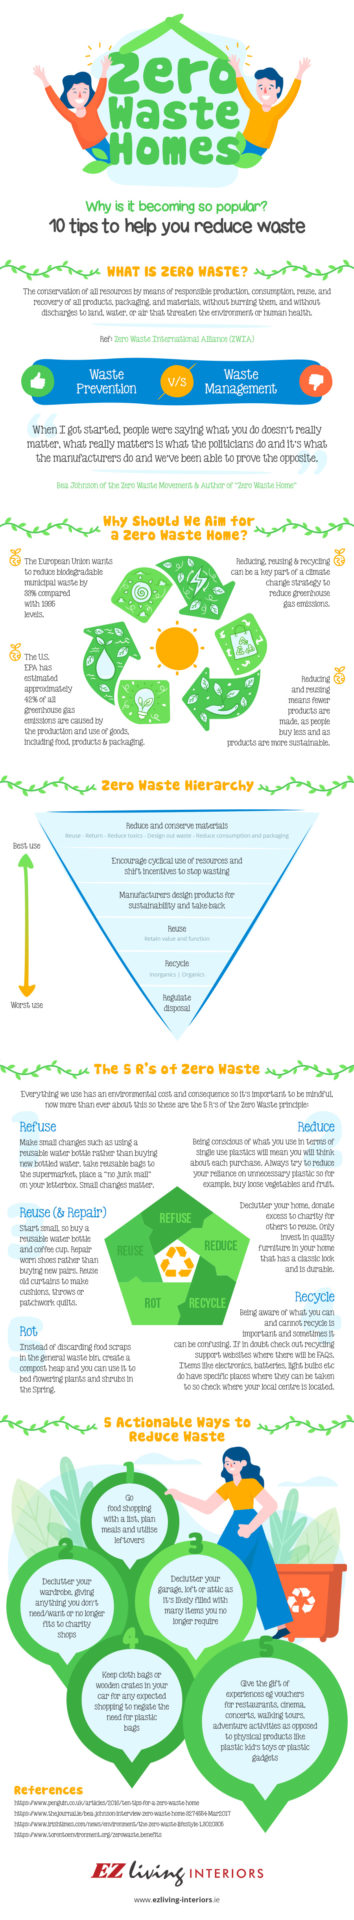 Zero Waste Home Infographic